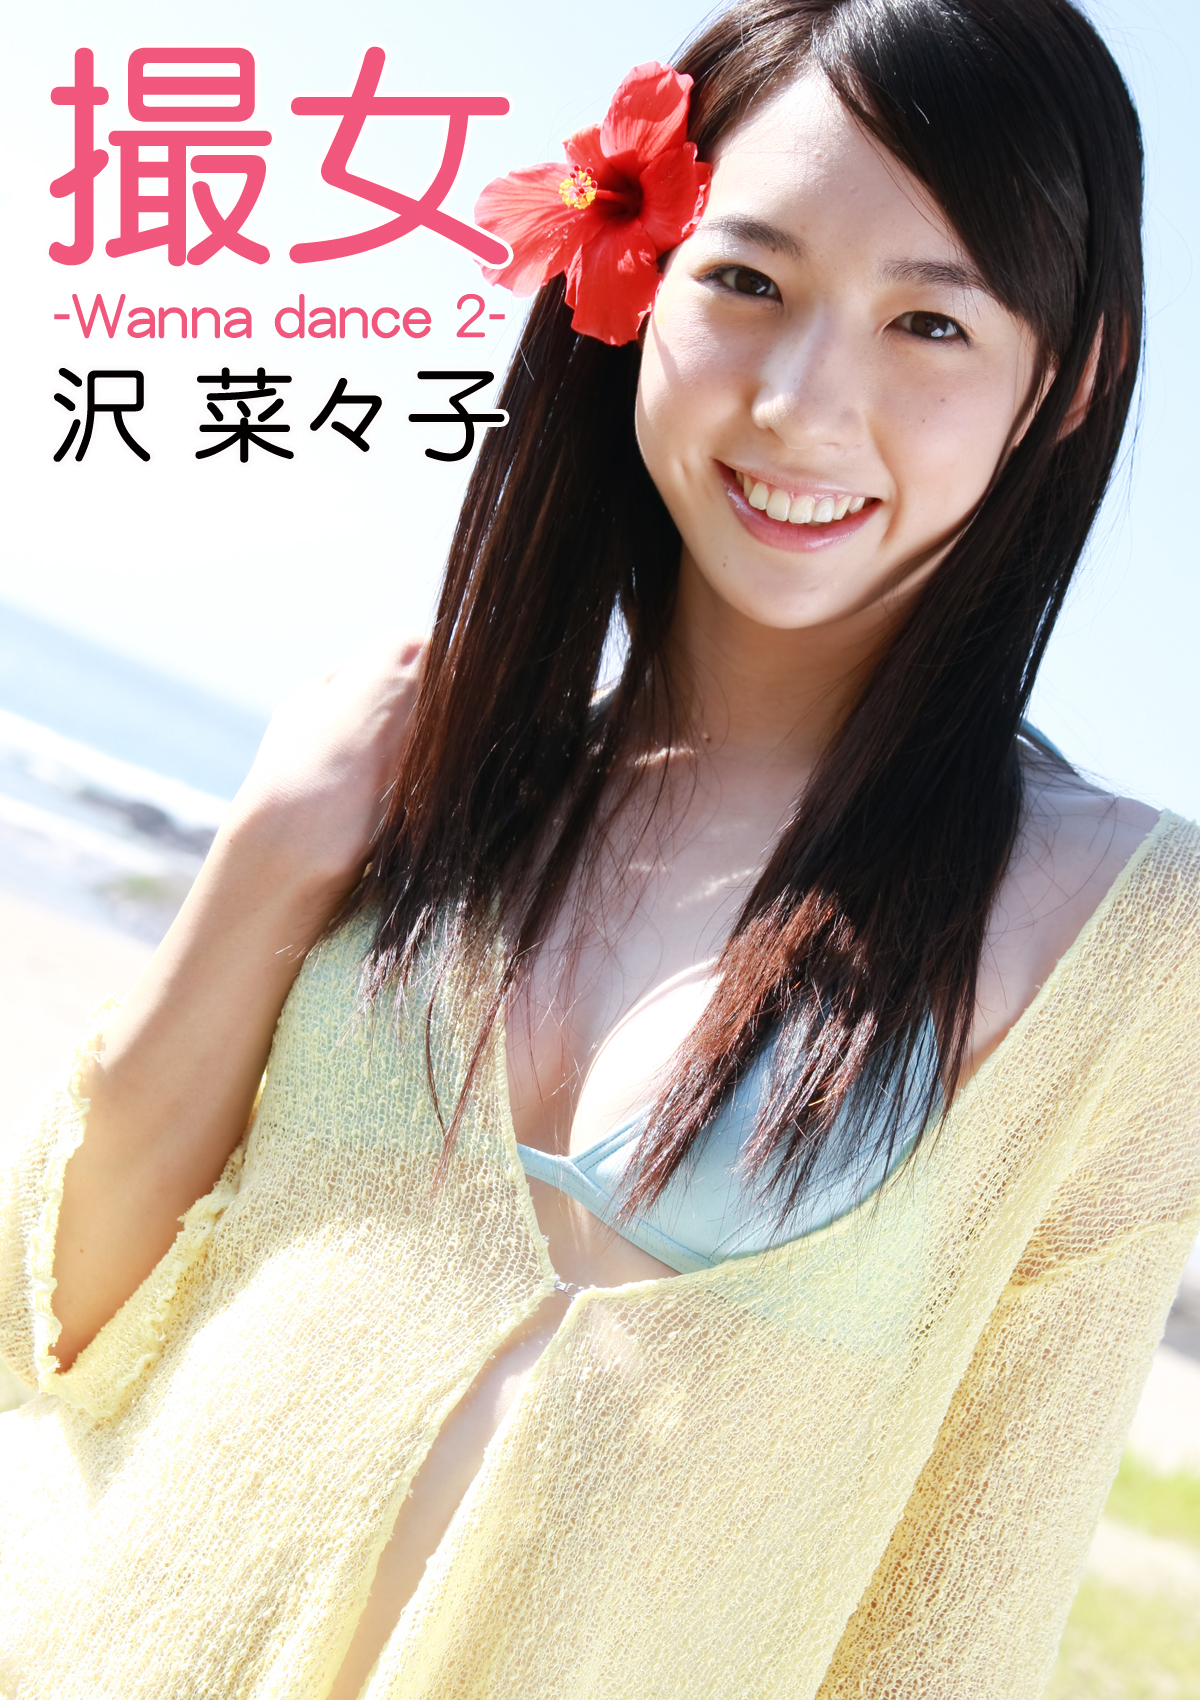 撮女 沢菜々子 -Wanna dance 2-(写真集) - 電子書籍 | U-NEXT 初回600円分無料